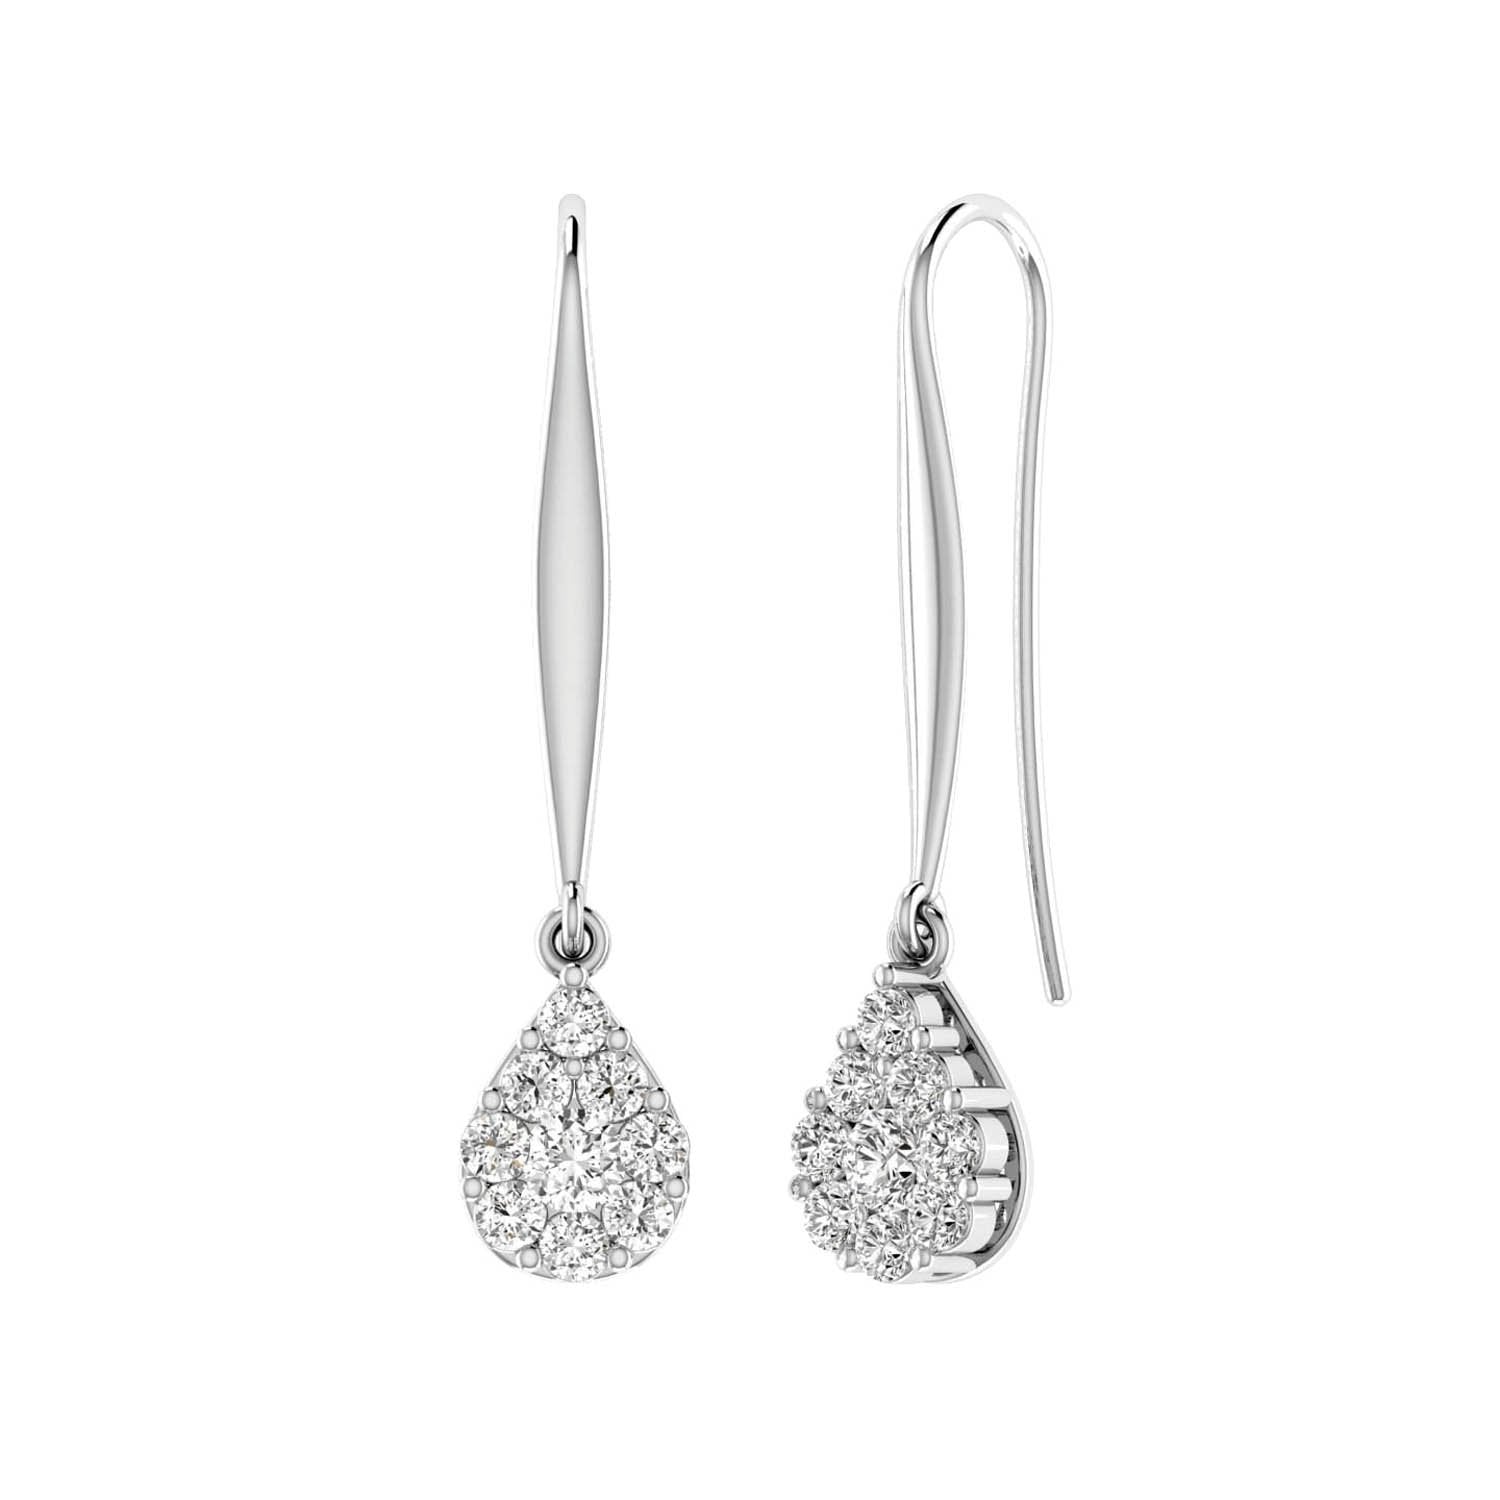 Tear Drop Hook Diamond Earrings with 0.50ct Diamonds in 9K White Gold - 9WTDSH50GH